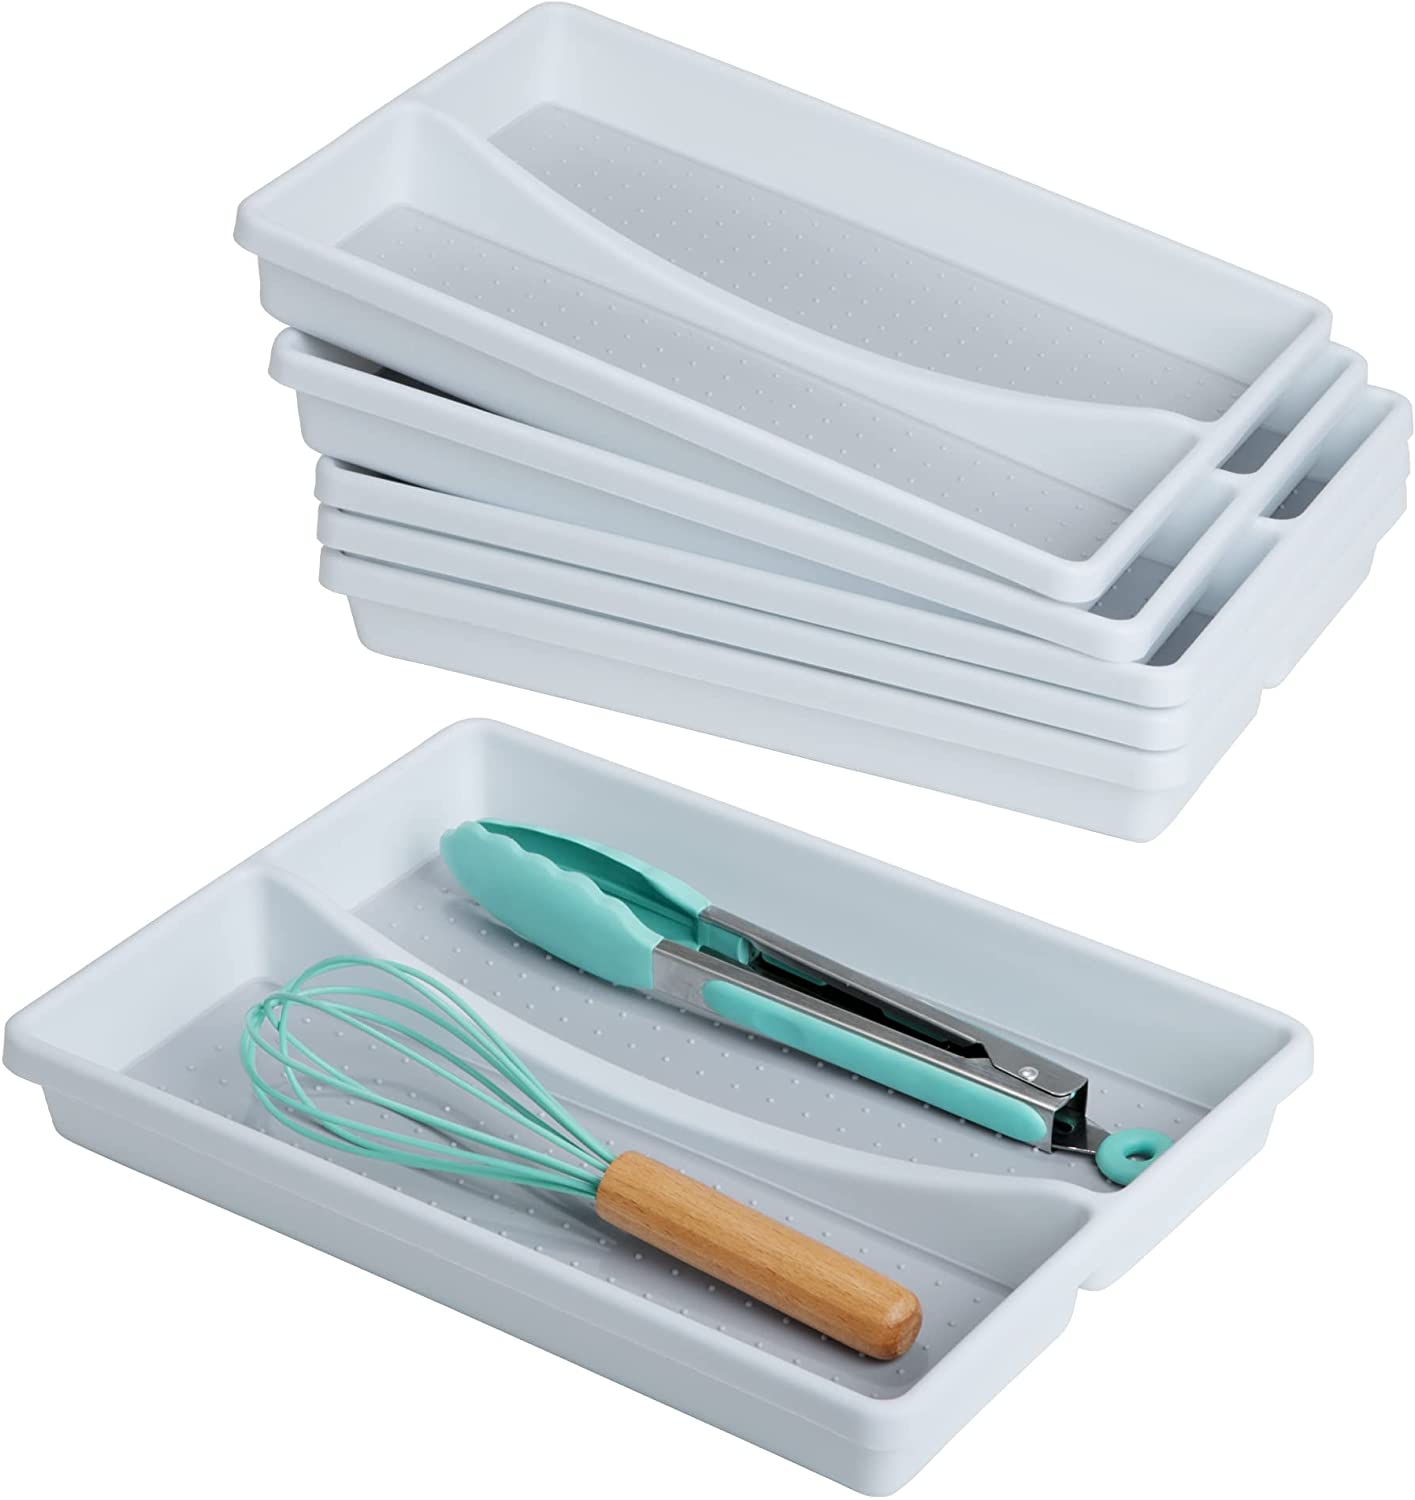 2-Compartment Plastic Drawer Organizer - White - Smart Design® 3